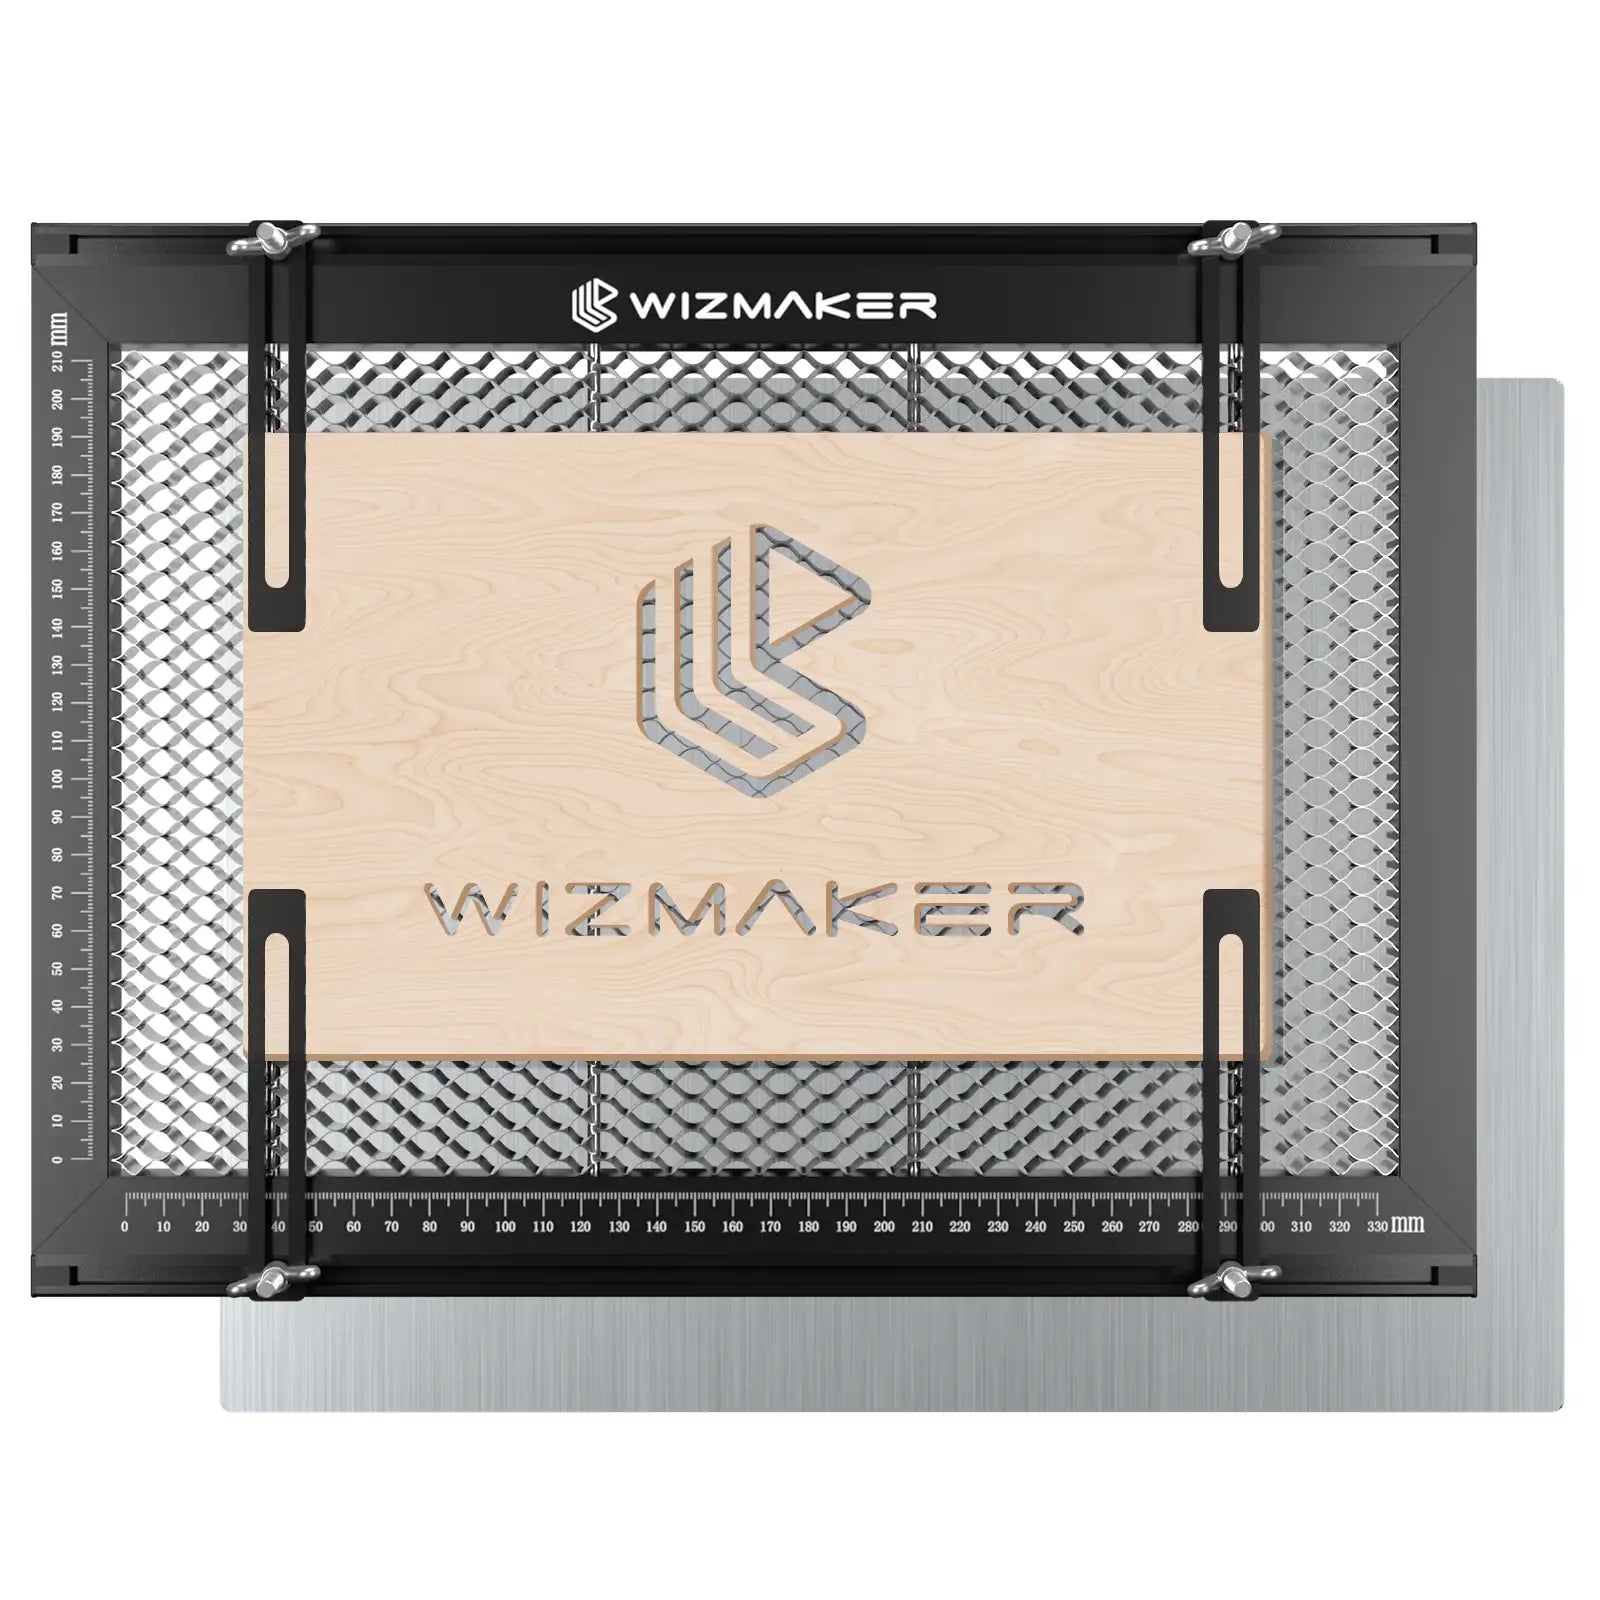 WIZMAKER Honeycomb-Laser Bed with Fixture 381*283mm